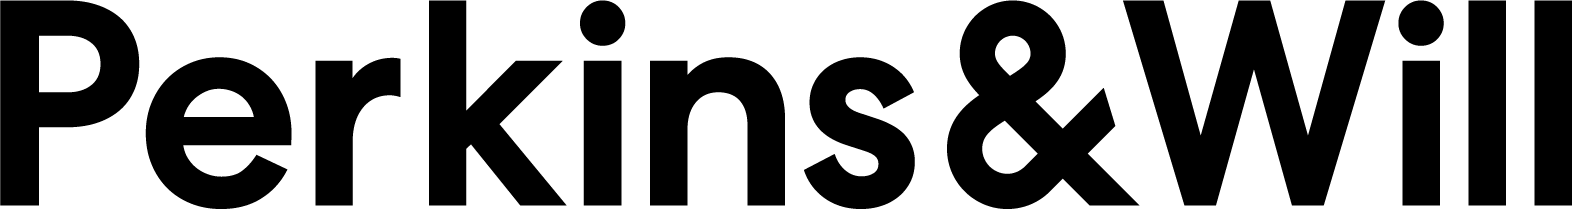 pw-logo-black